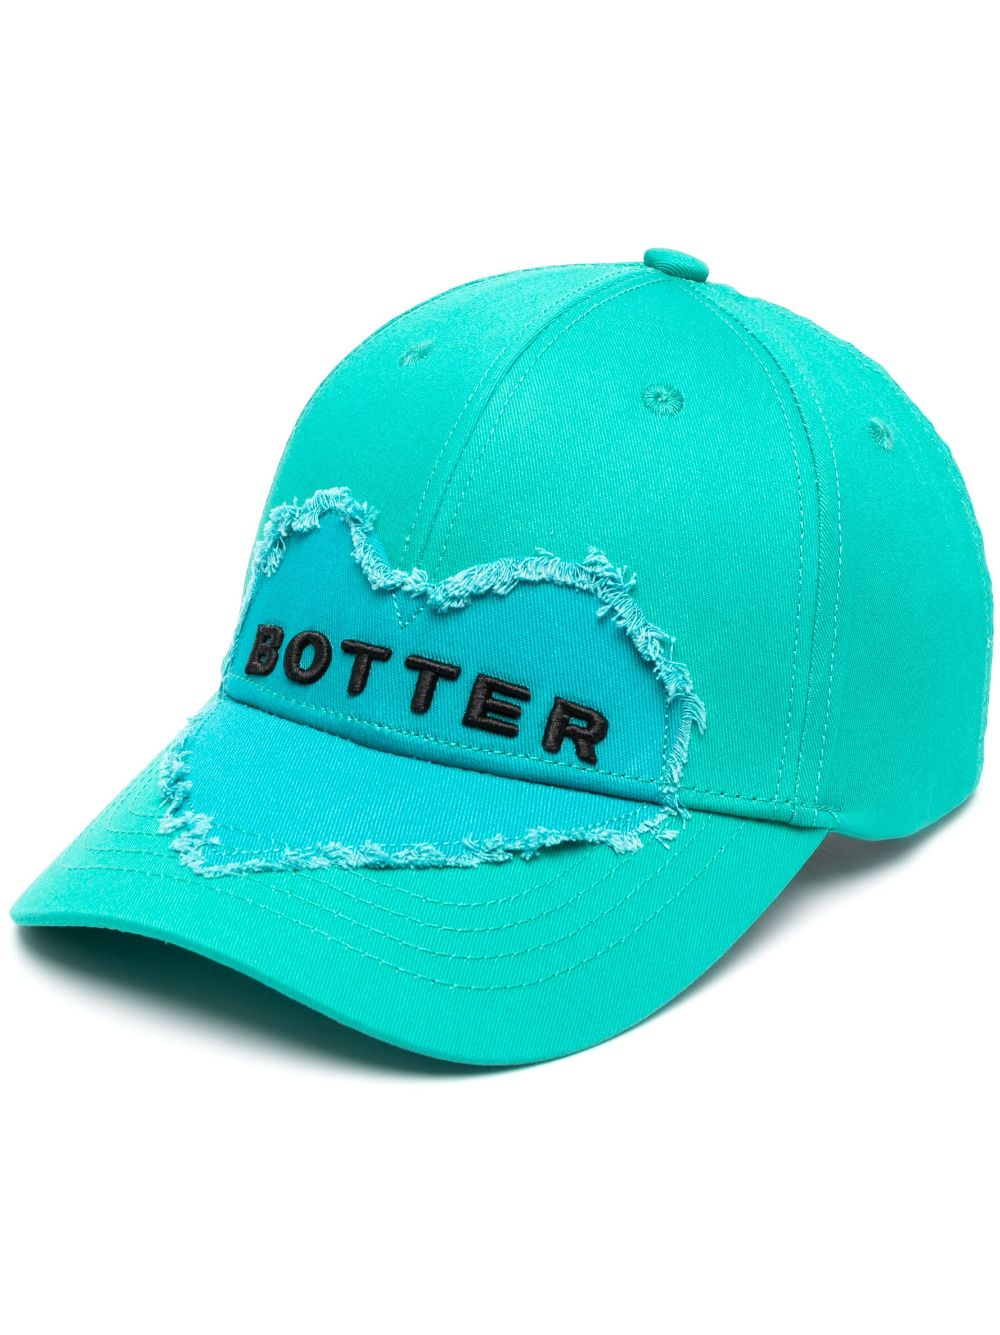 BOTTER LOGO-PATCH COTTON CAP